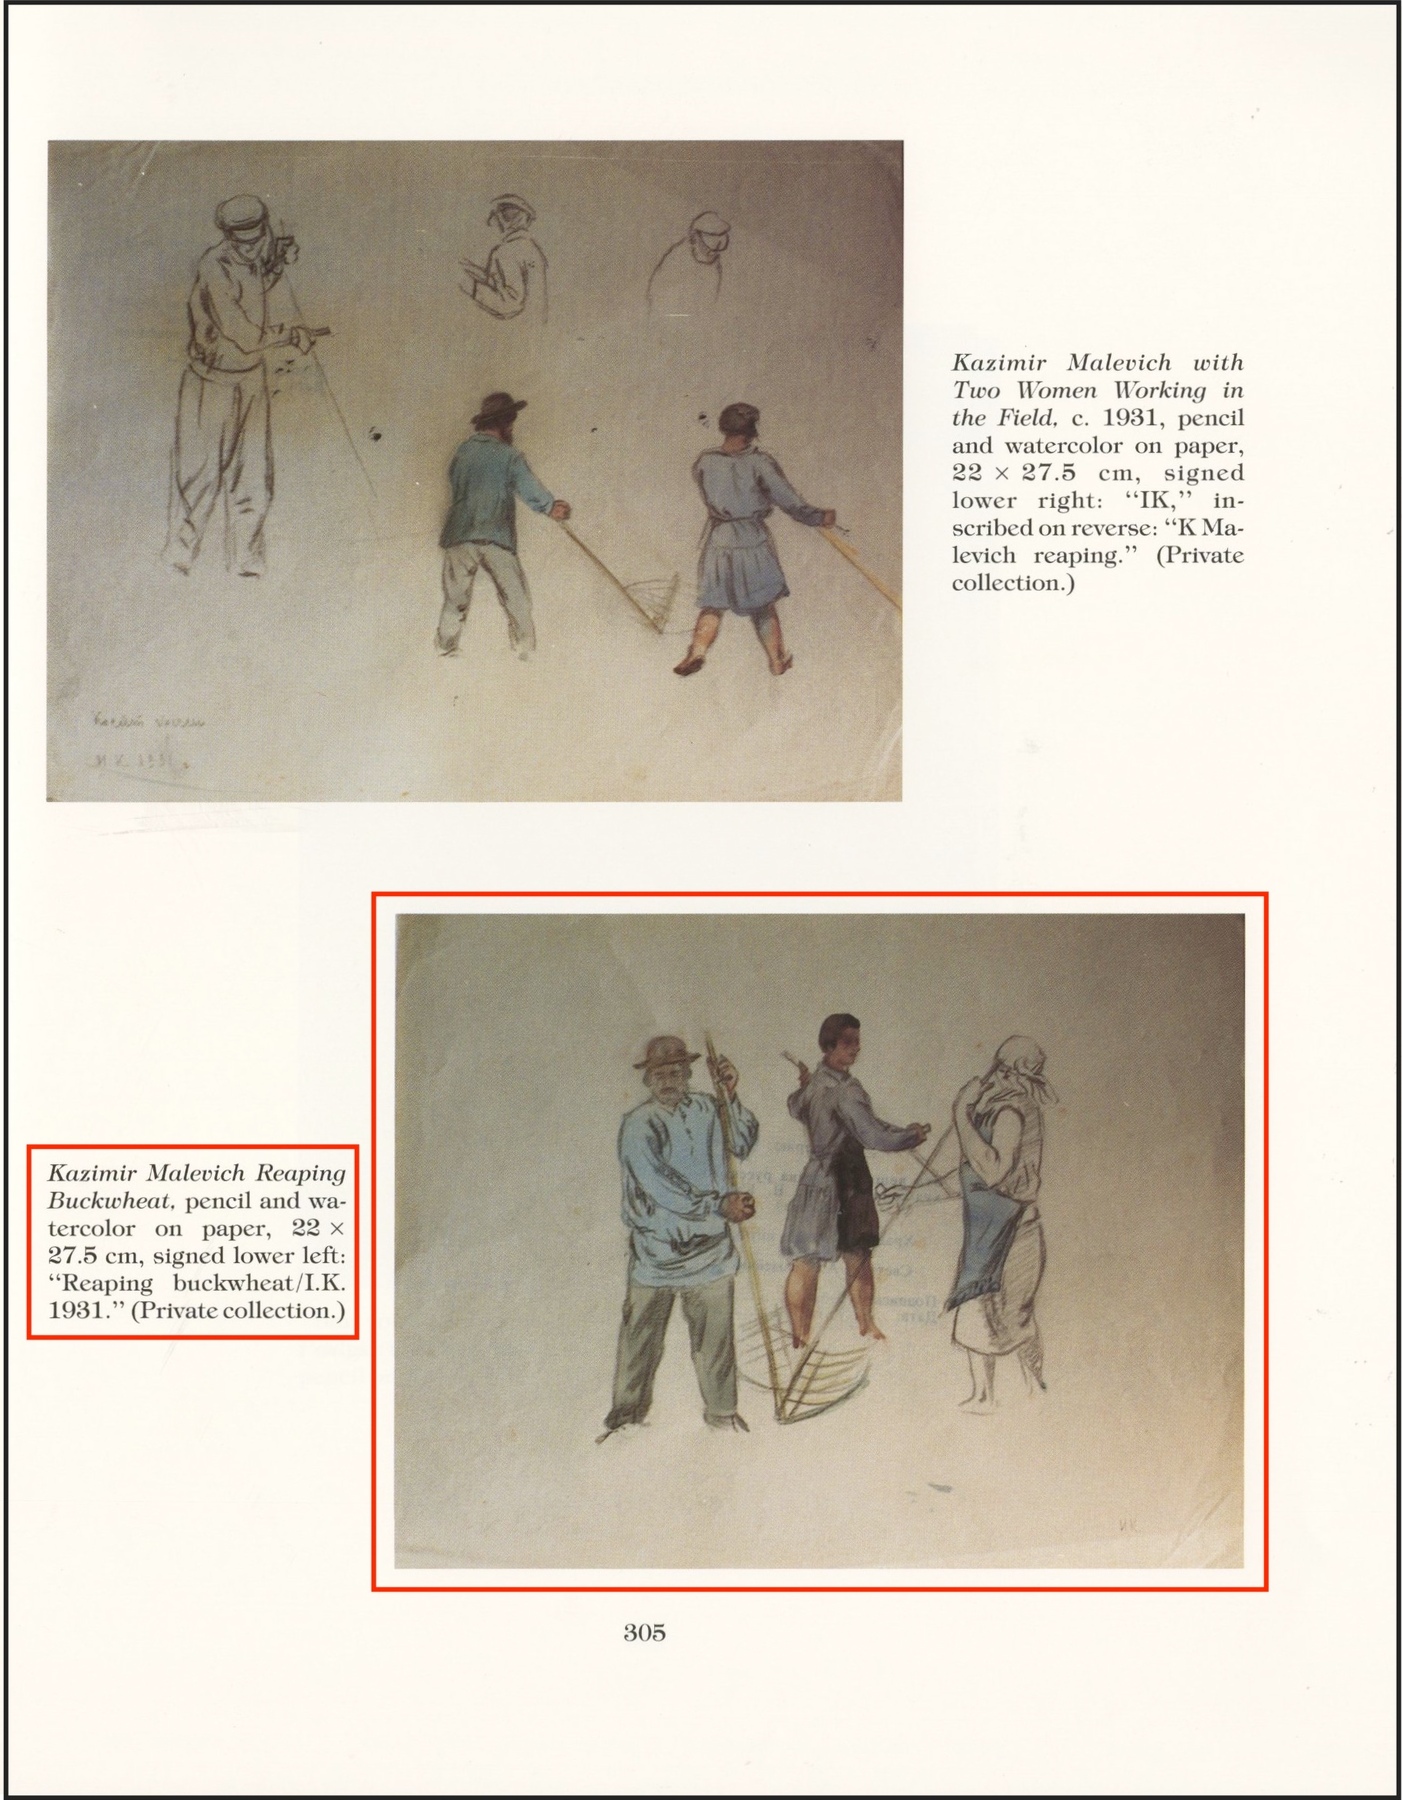 Kazimir Malevich Reaping Buckweat